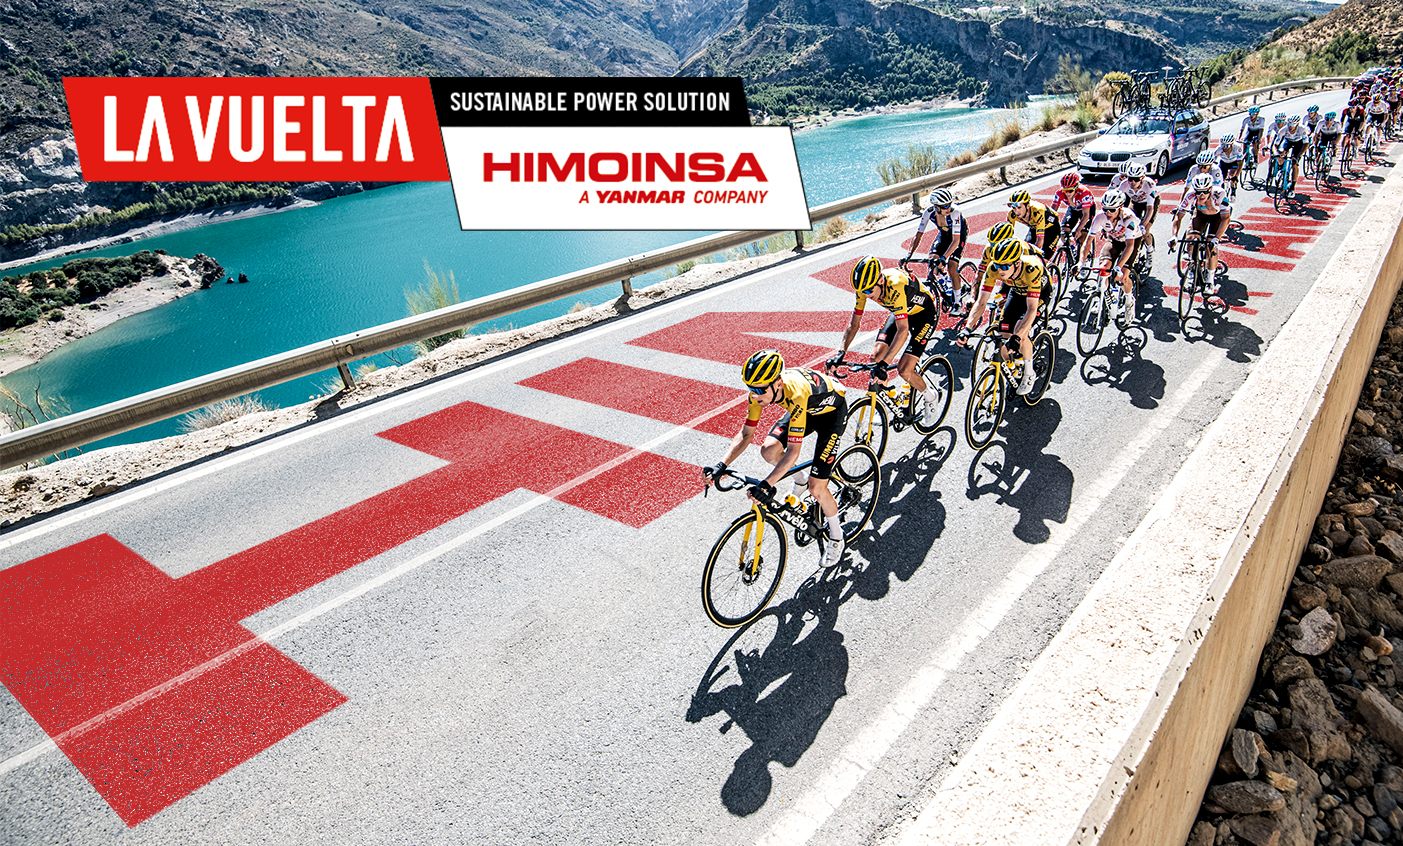 HIMOINSA y La Vuelta se unen para proporcionar energía sostenible en la competición de ciclismo de referencia en España